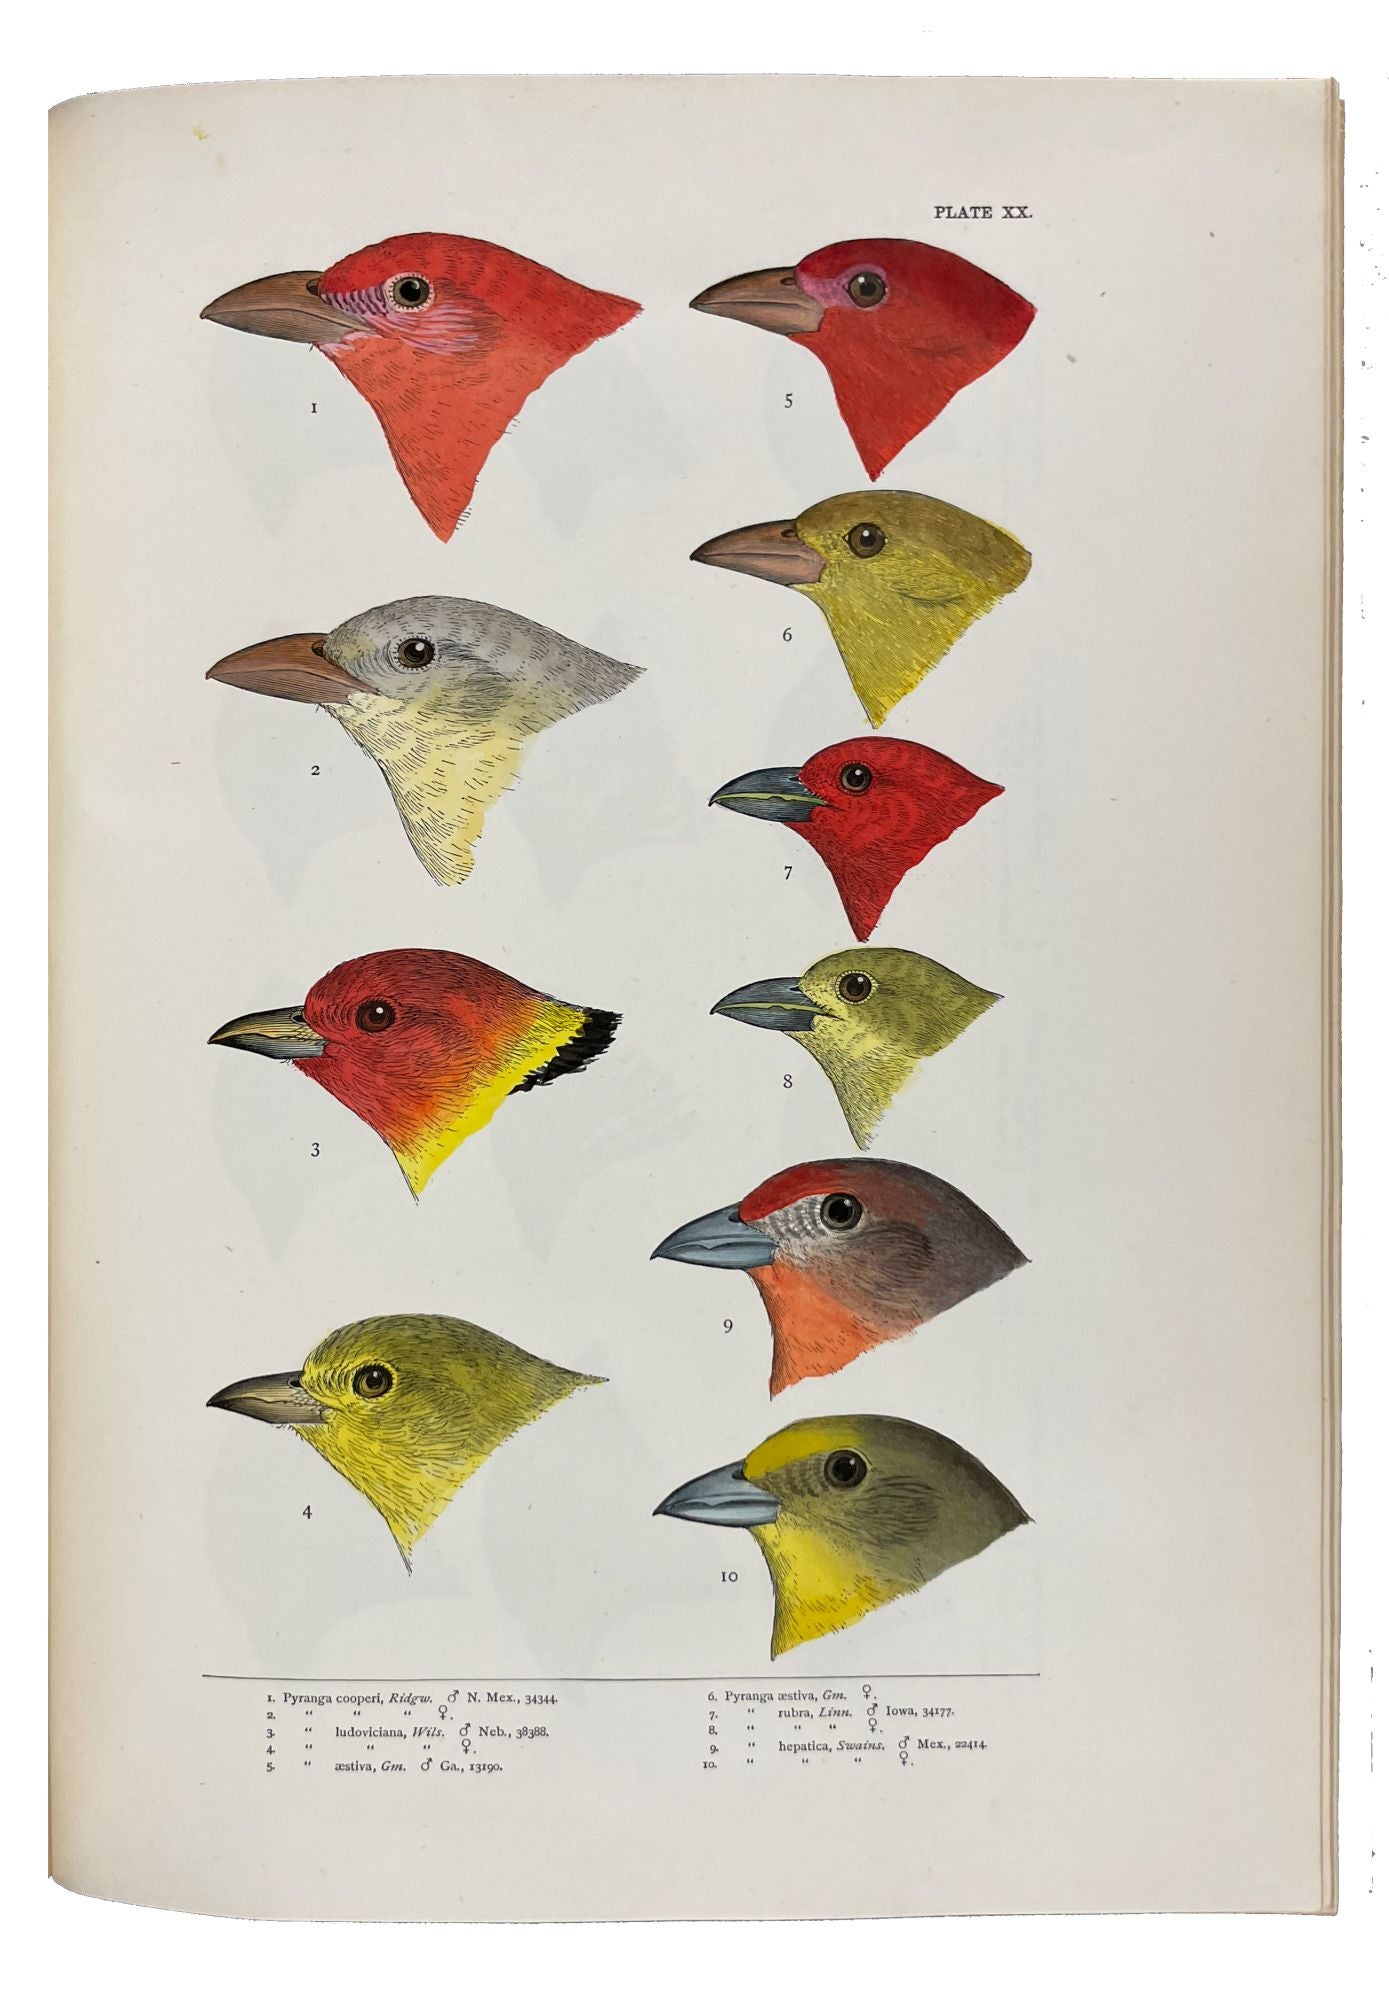 A history of North American birds [microform] : land birds. Birds